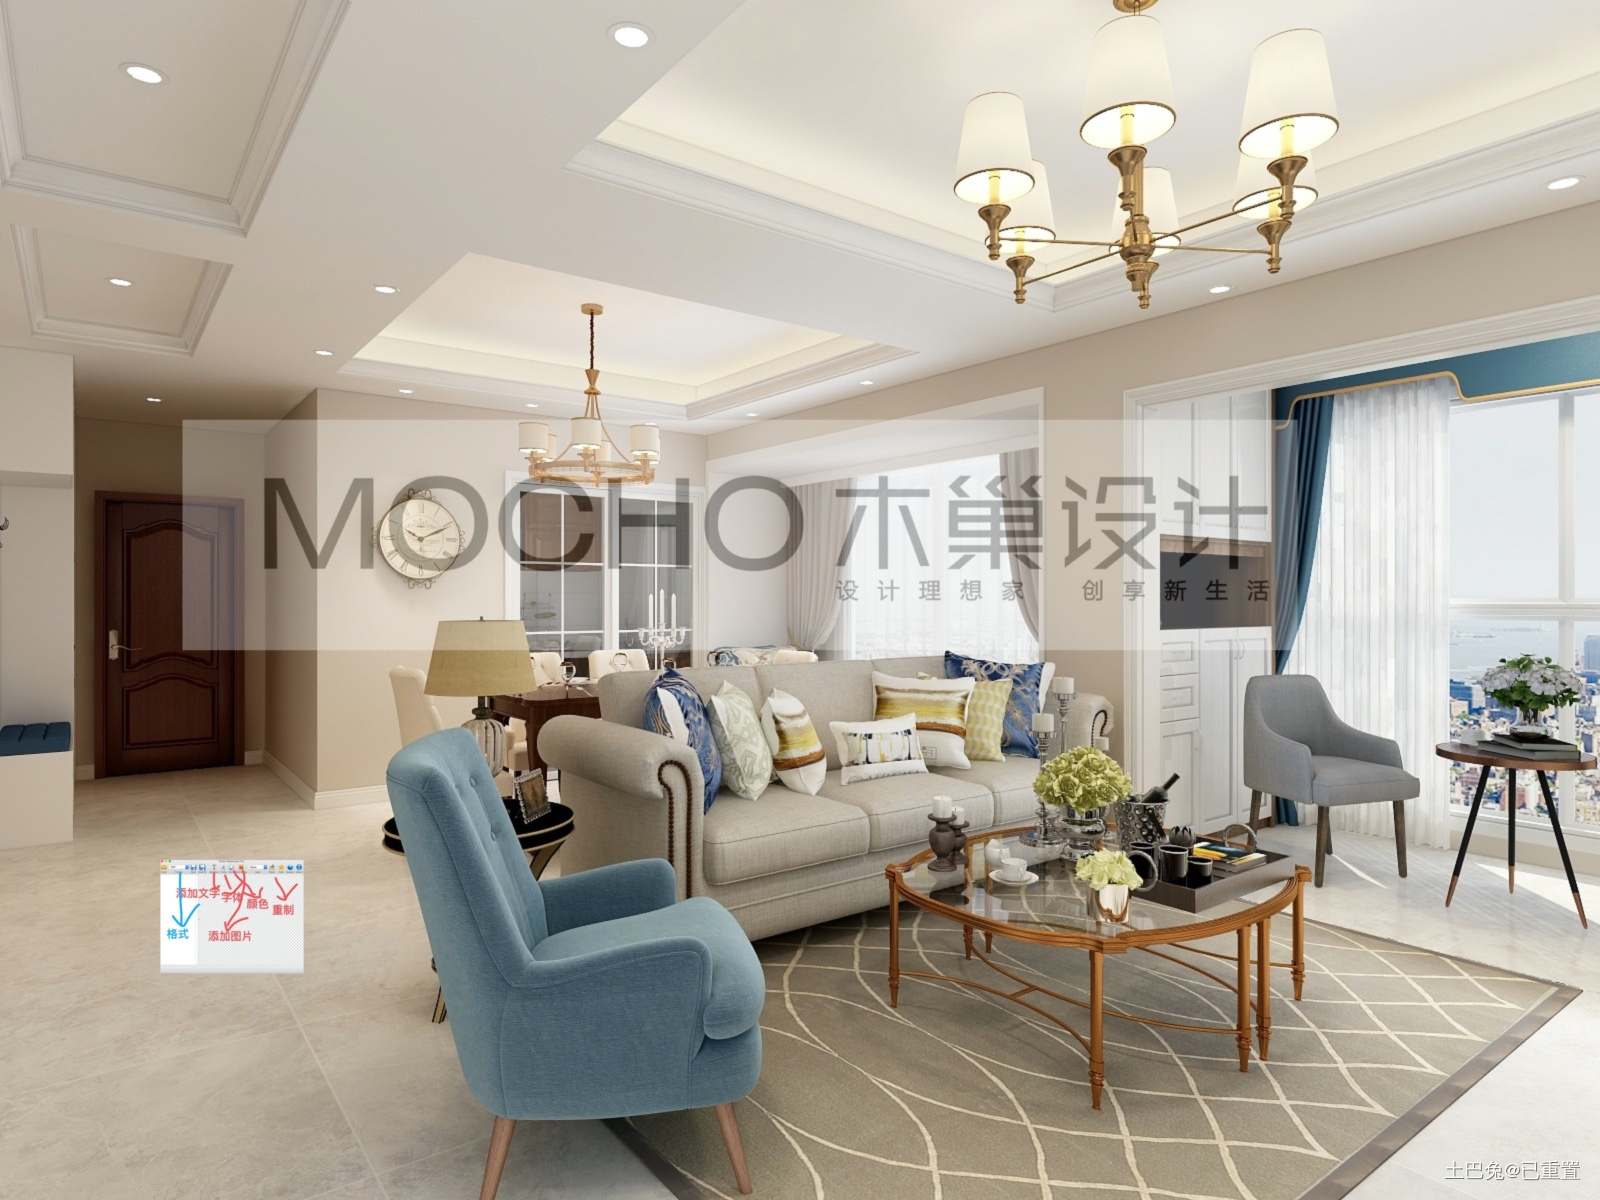 木巢设计美式混搭浅色风格混搭客厅设计图片赏析